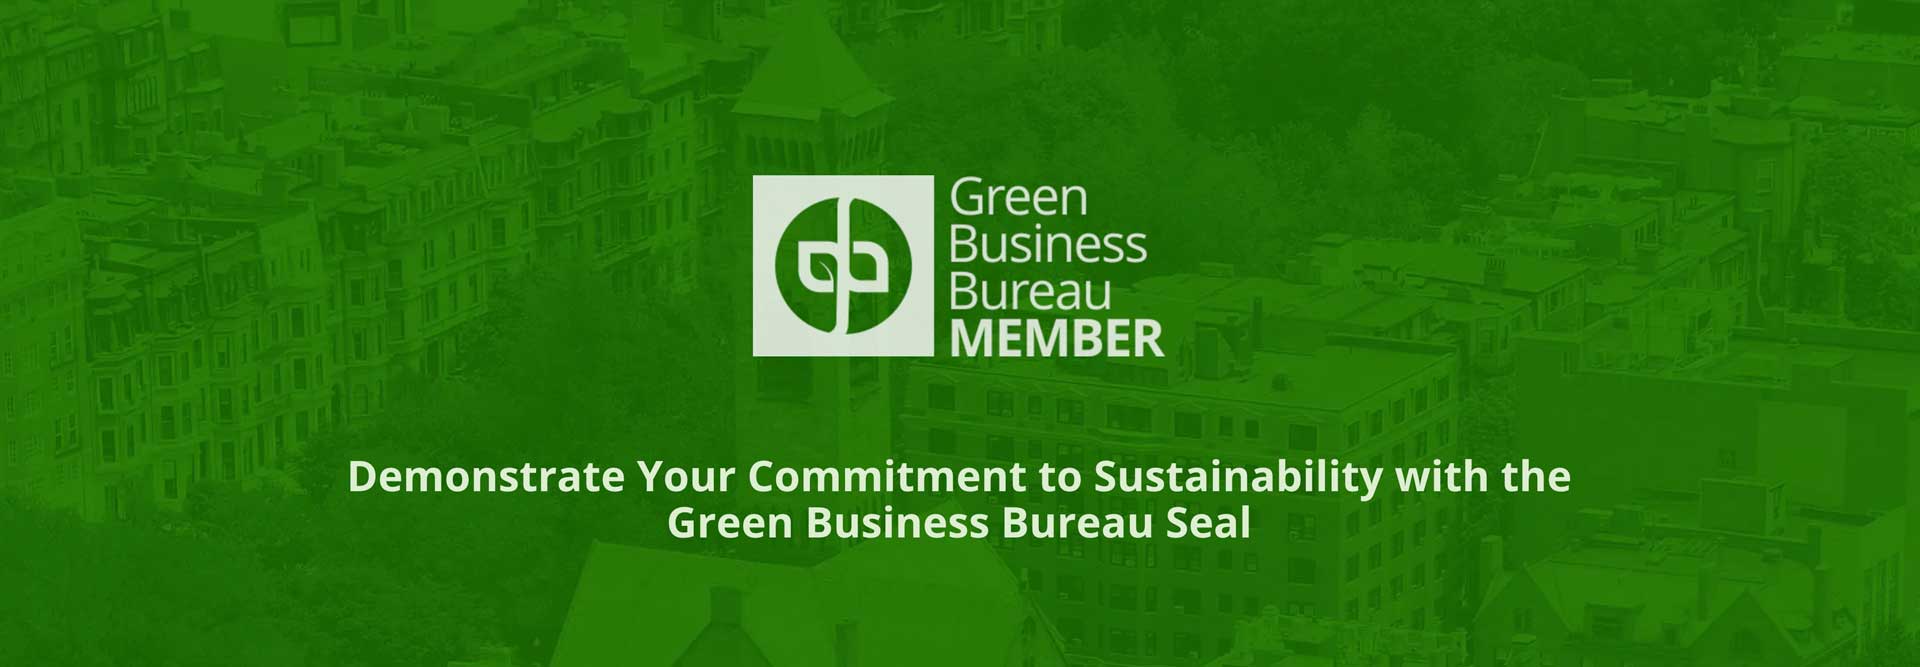 SYNLawn tritt dem Green Business Bureau bei